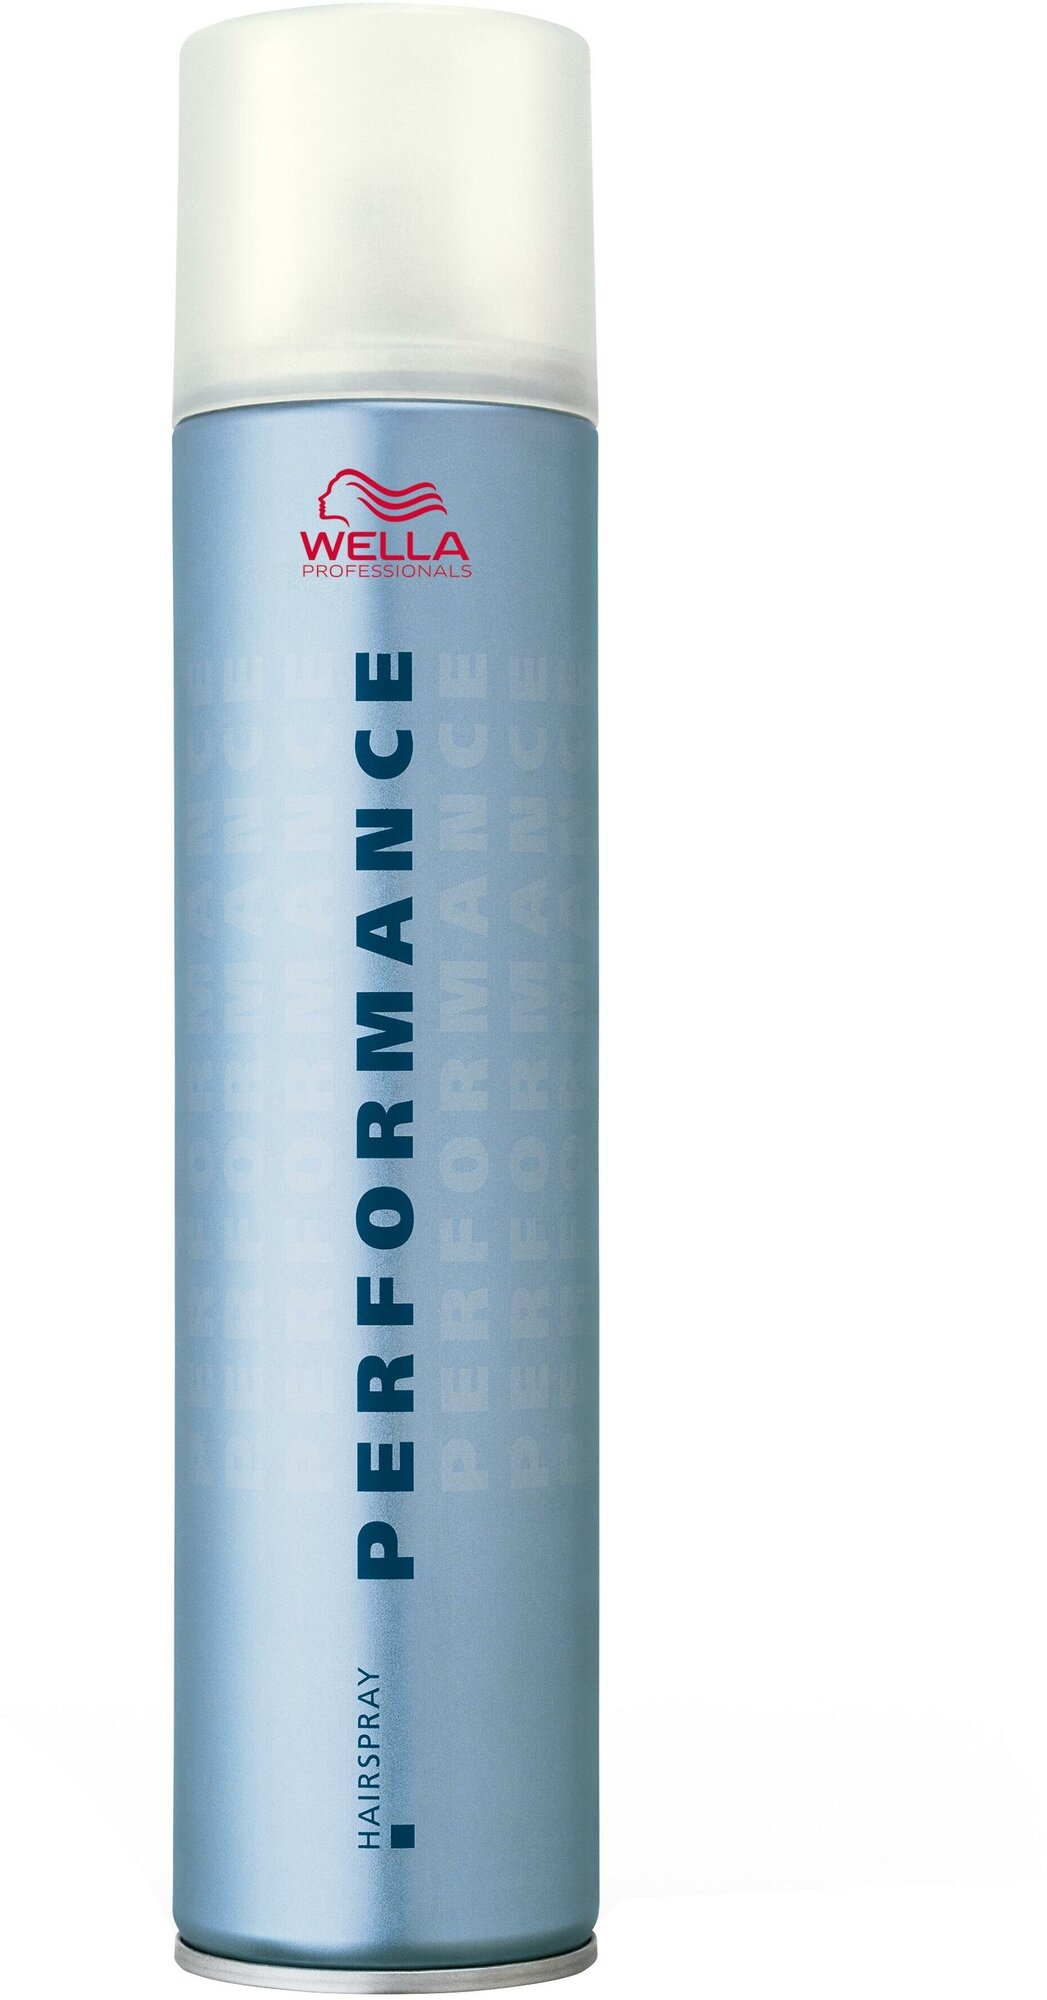 Wella Professionals Лак для волос Performance Extra strong, экстрасильная фиксация, 500 мл